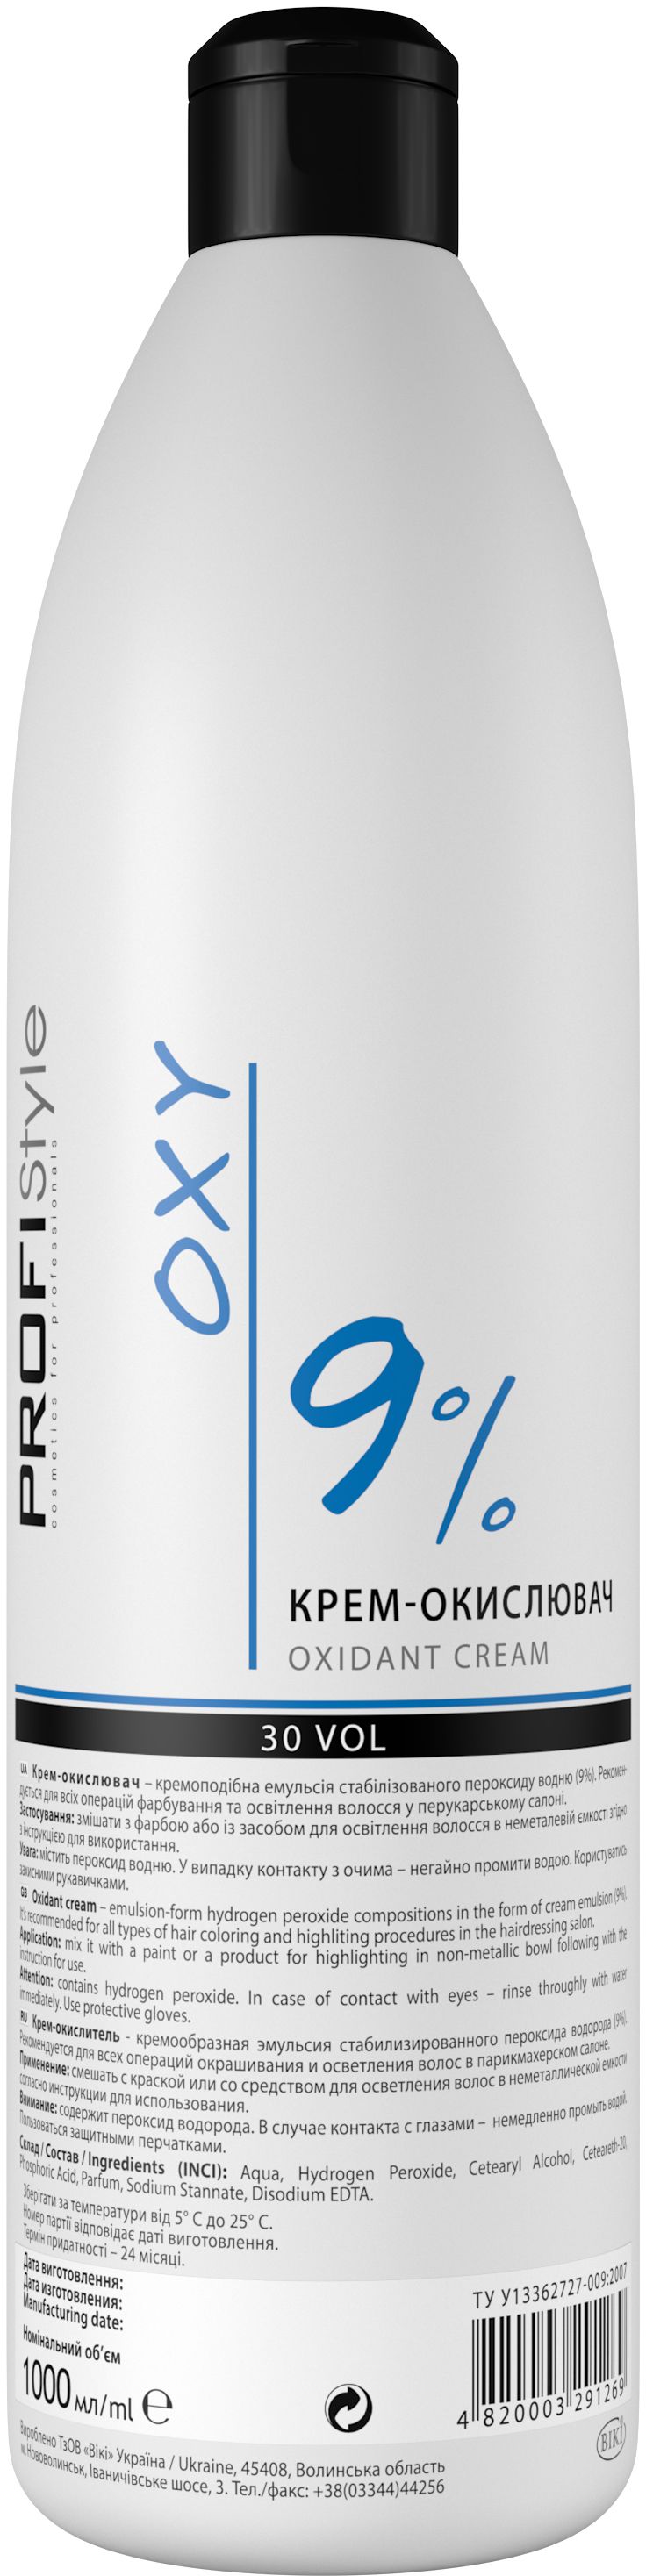 Крем-окислитель 9%